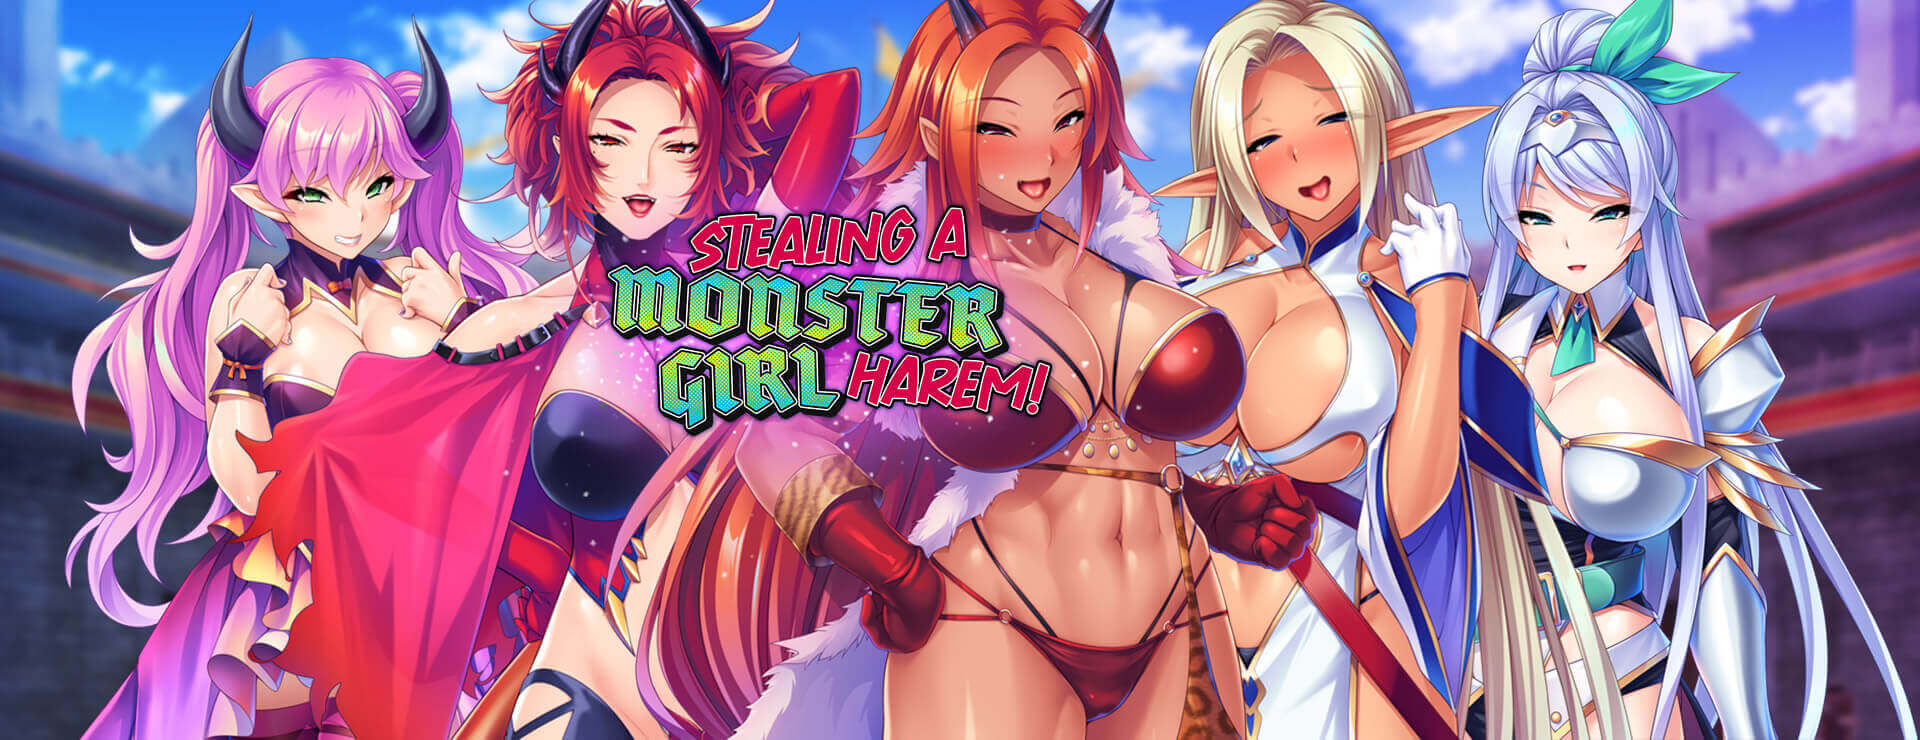 Stealing a Monster Girl Harem - 虚拟小说 遊戲